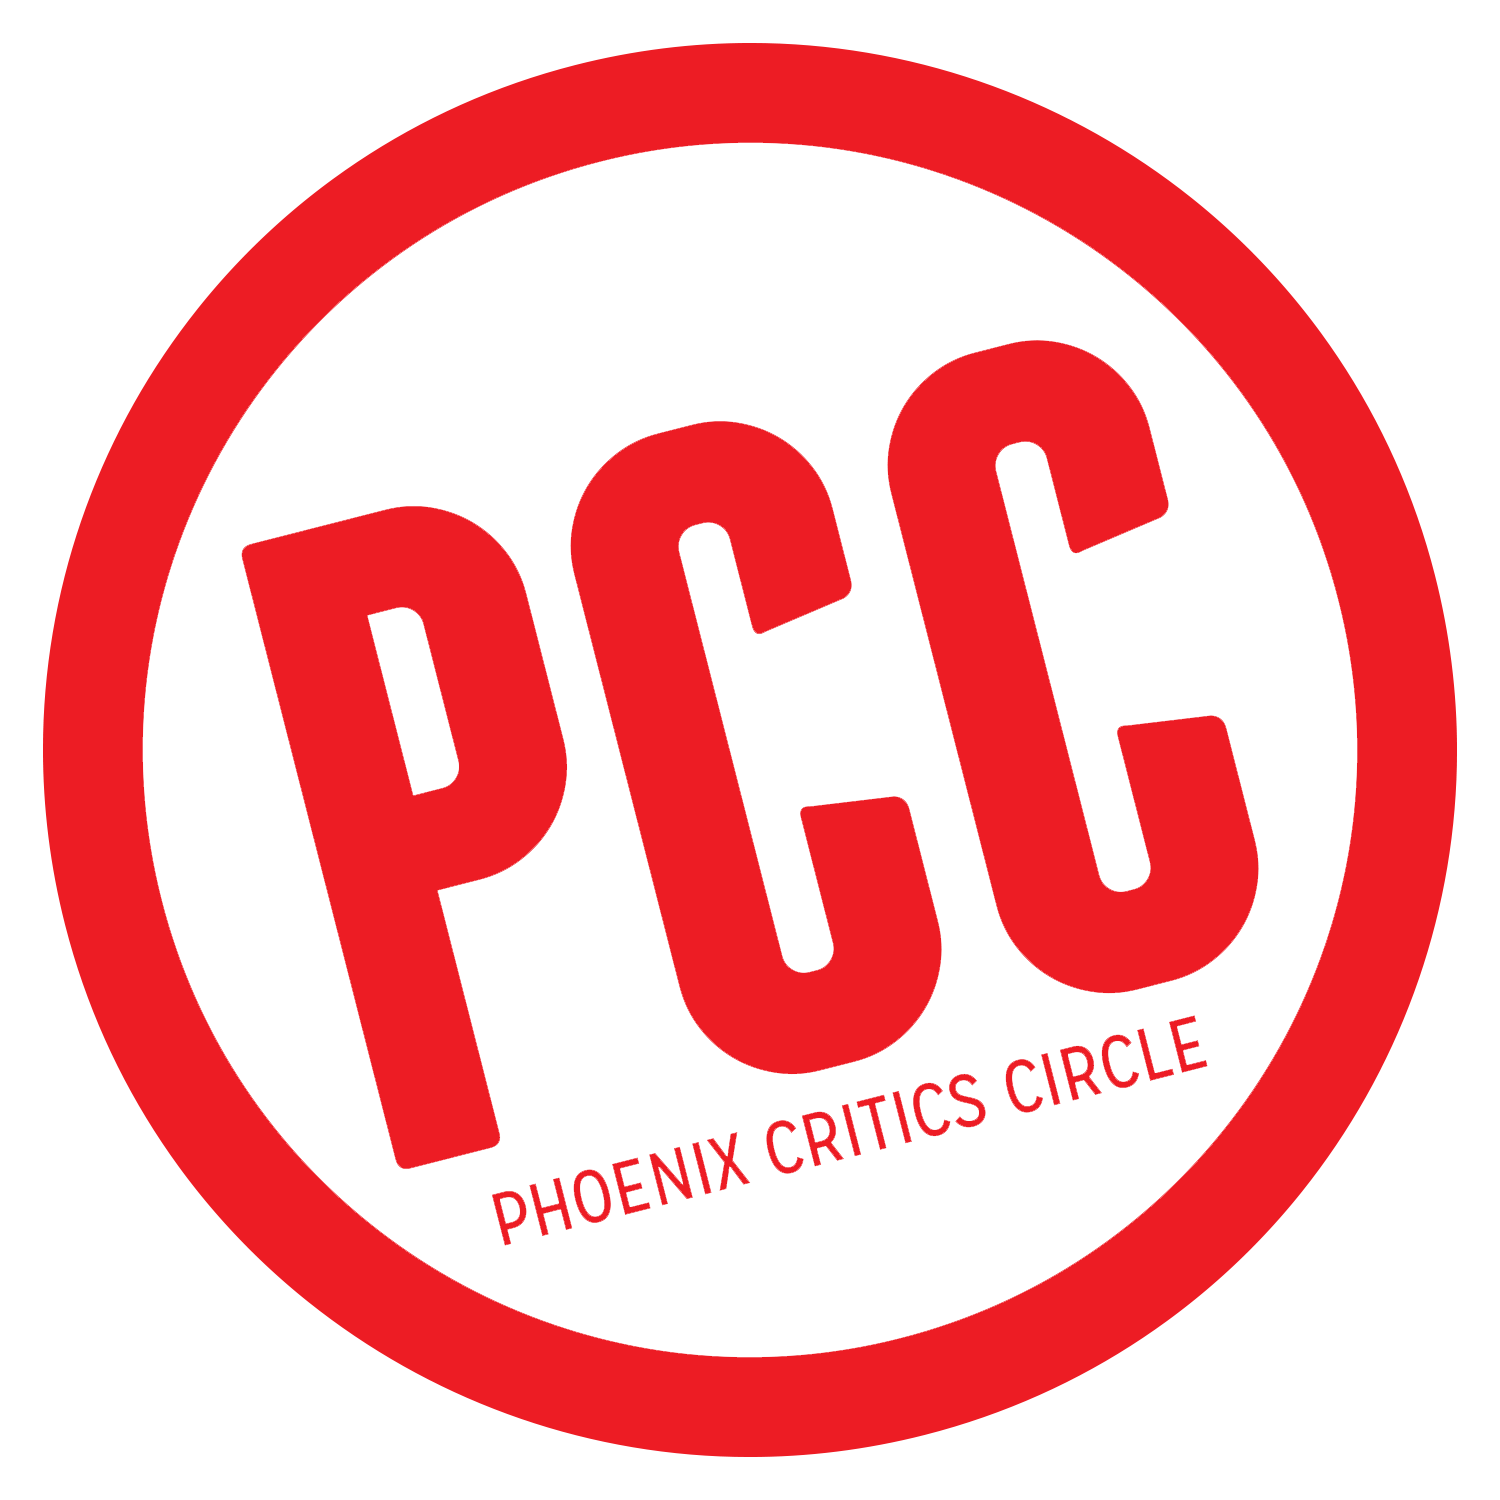 pcc_pff_logo.png